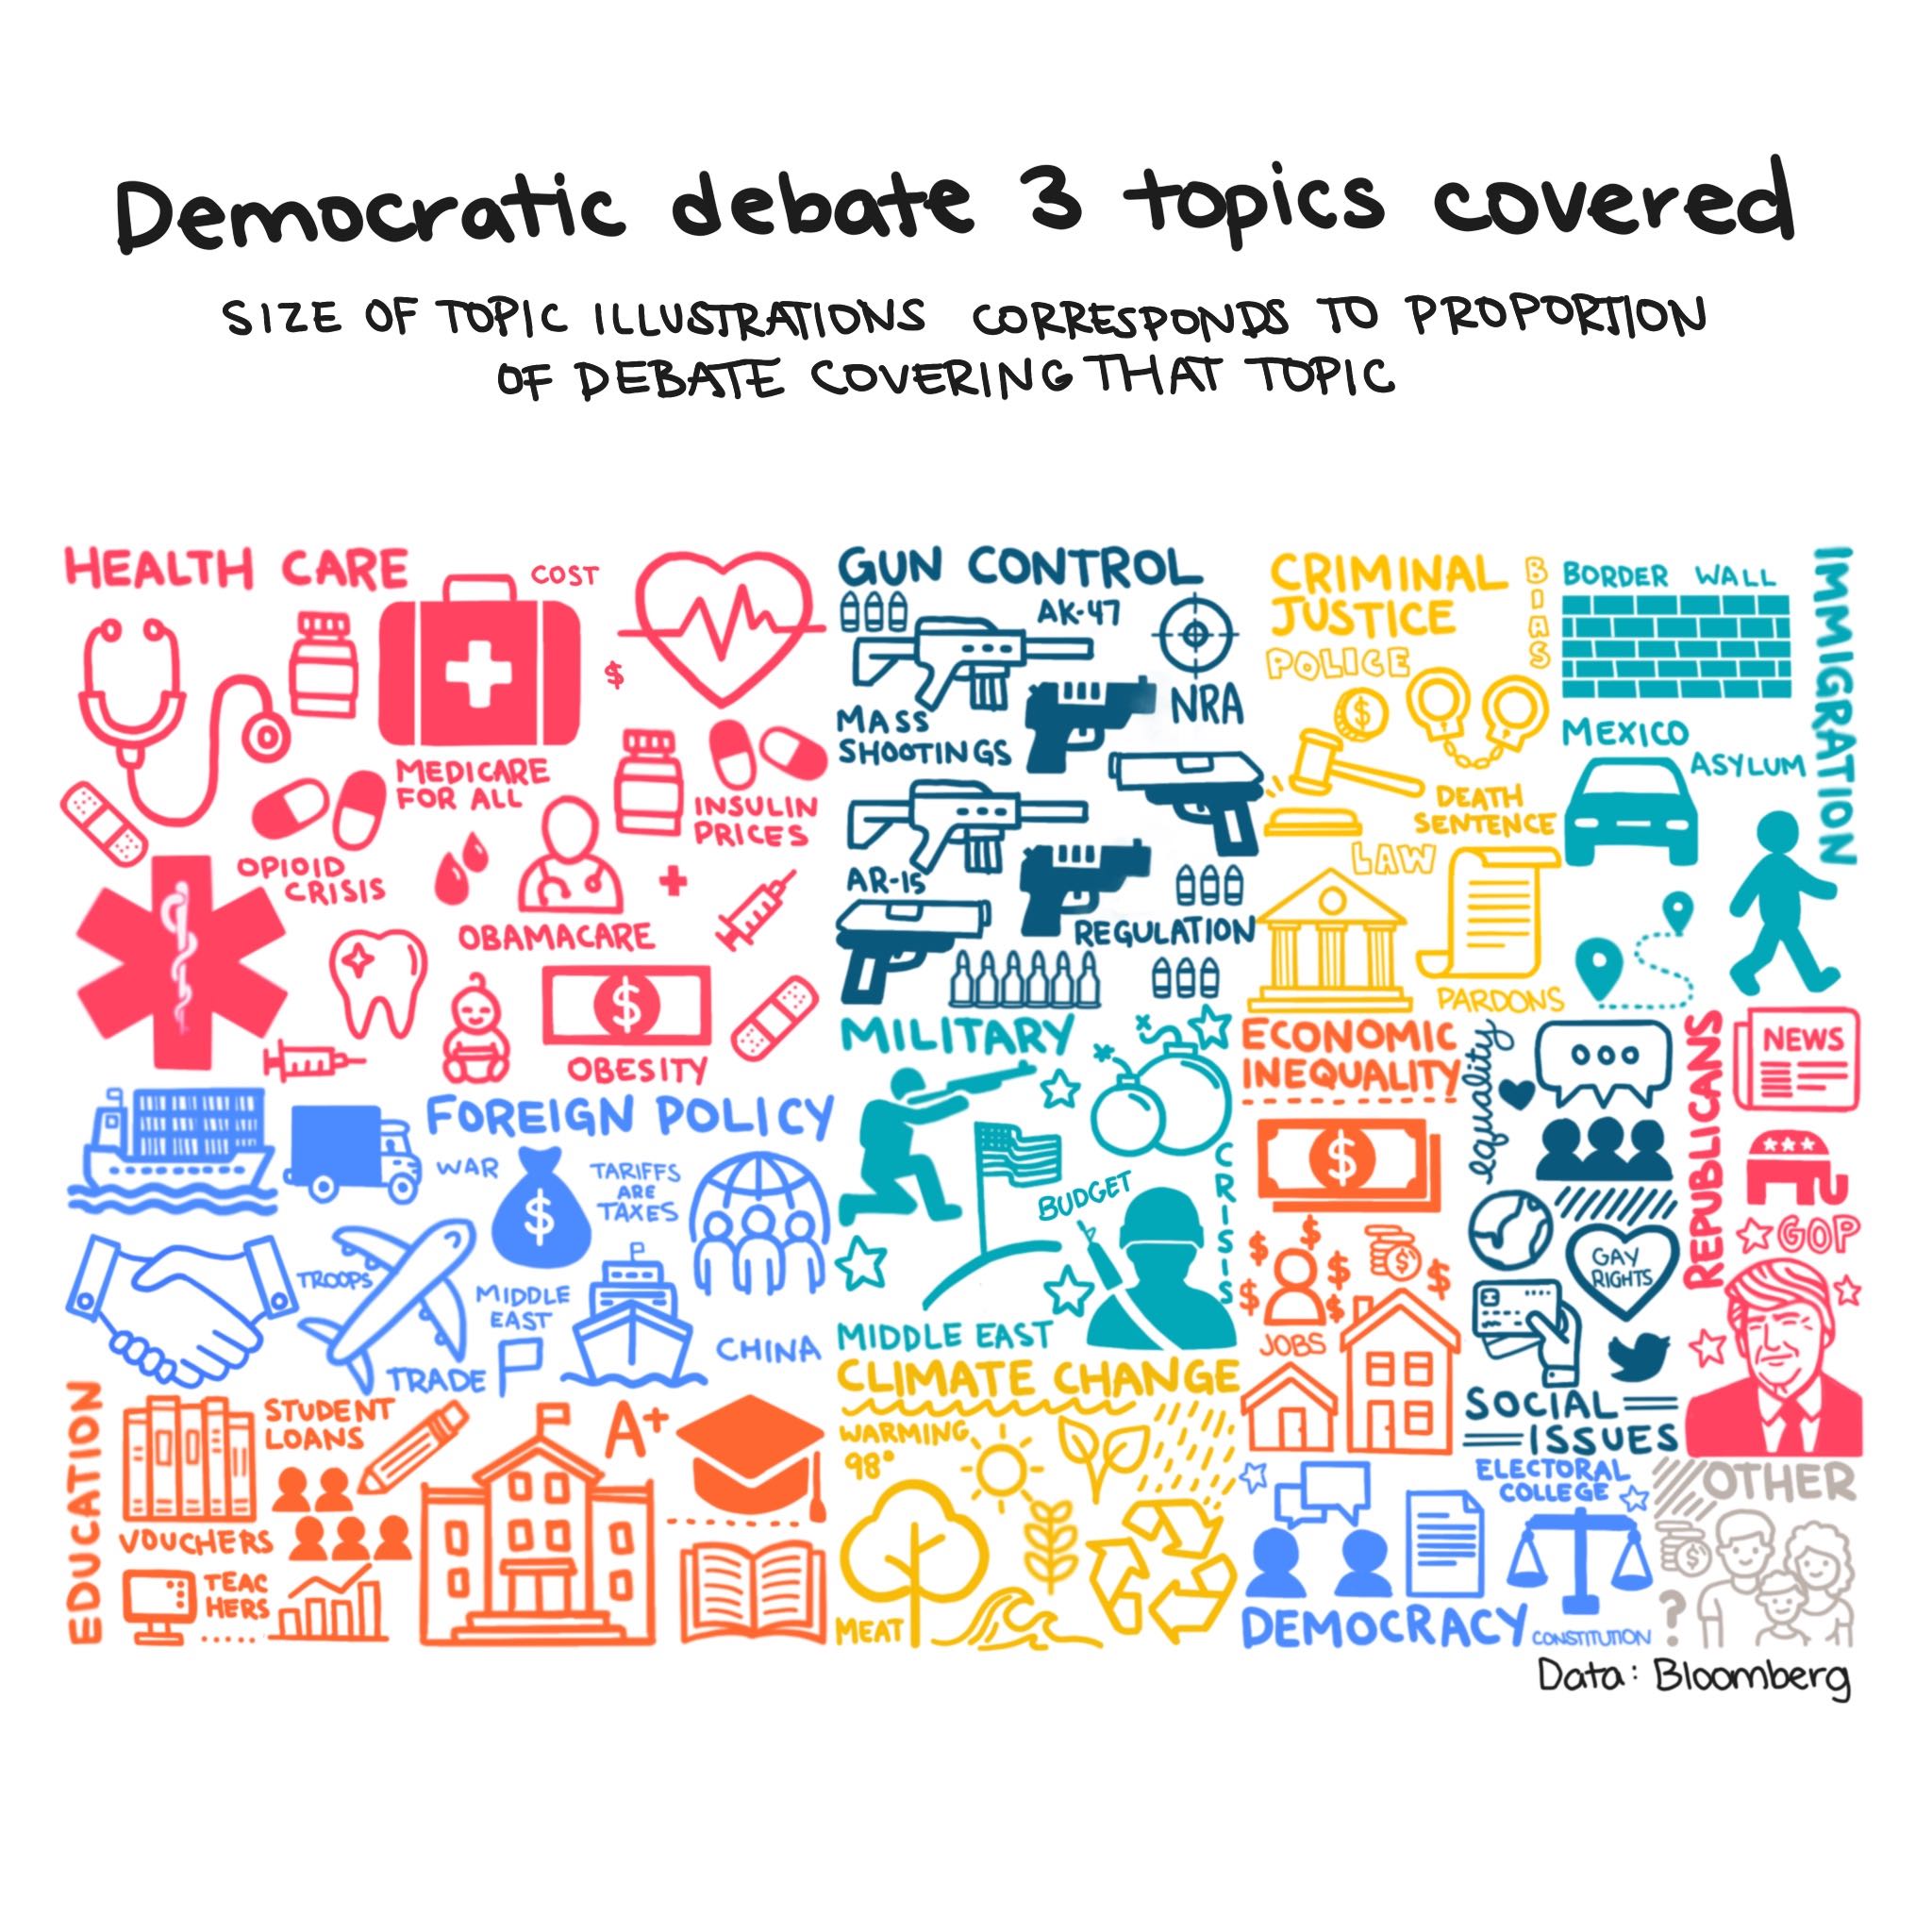 Illustrated treemap of democratic presidential debate topics discussed